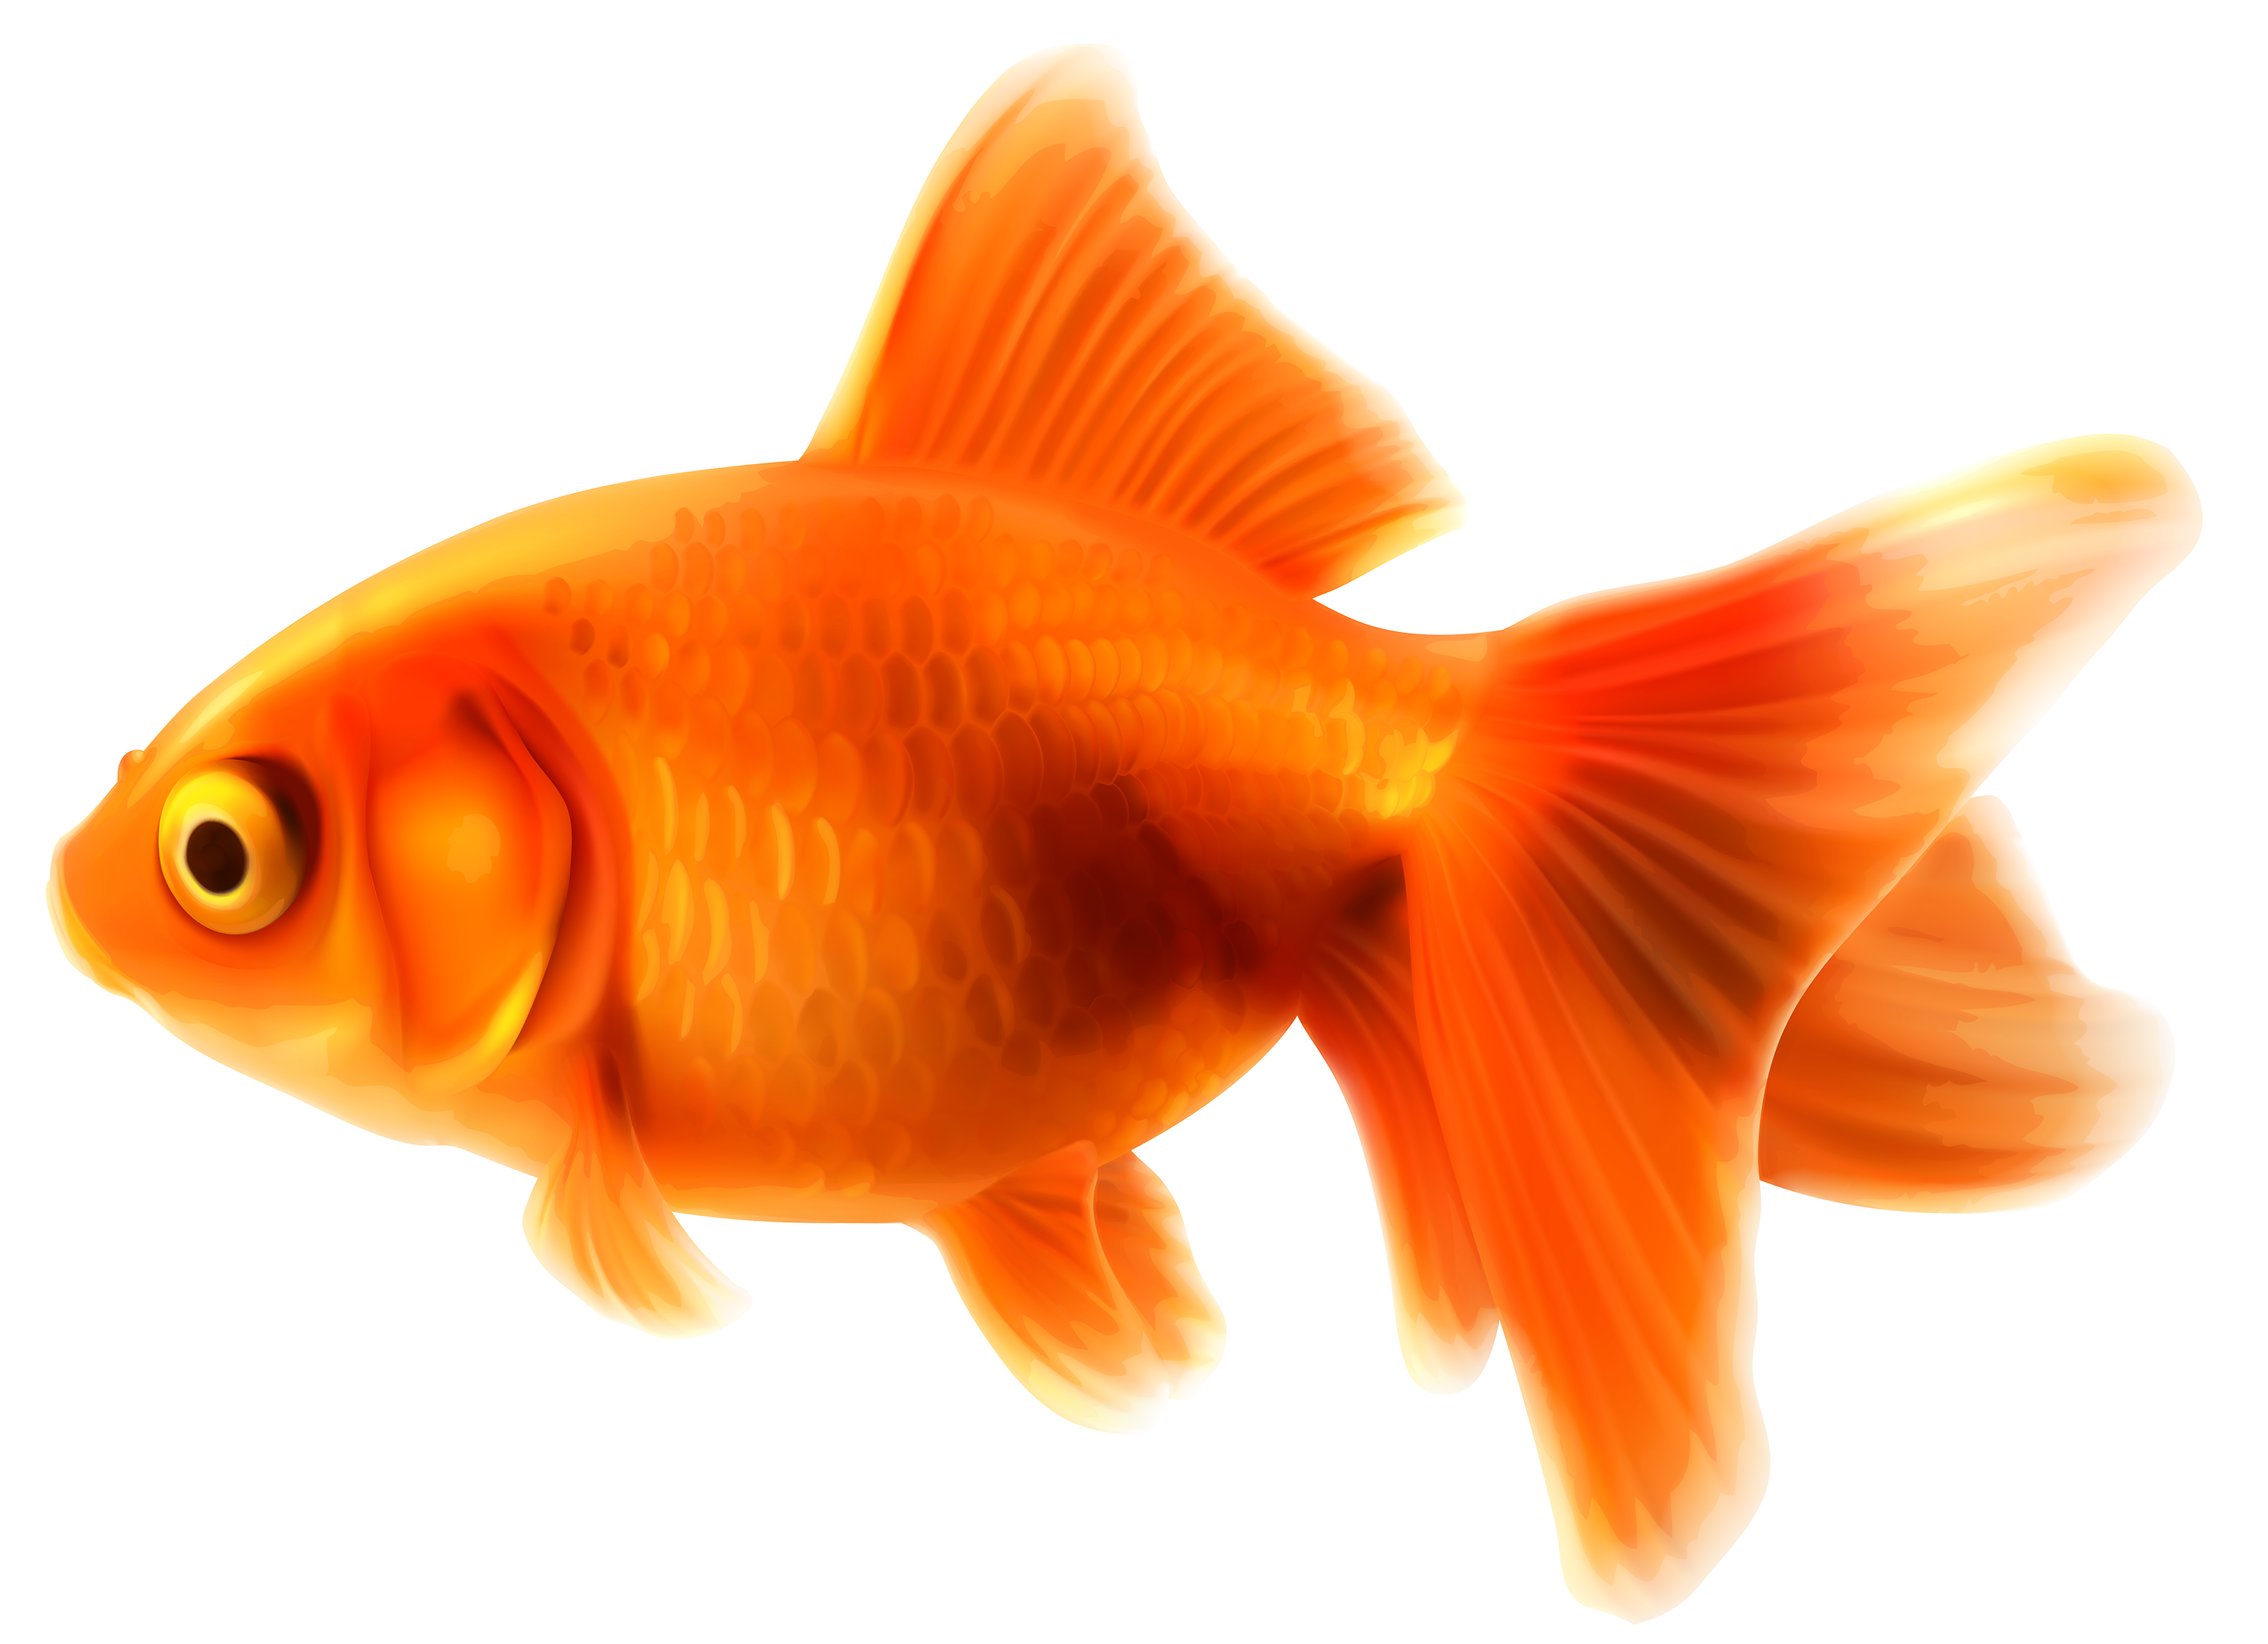 Goldfish PNG Clipart - Best WEB Clipart